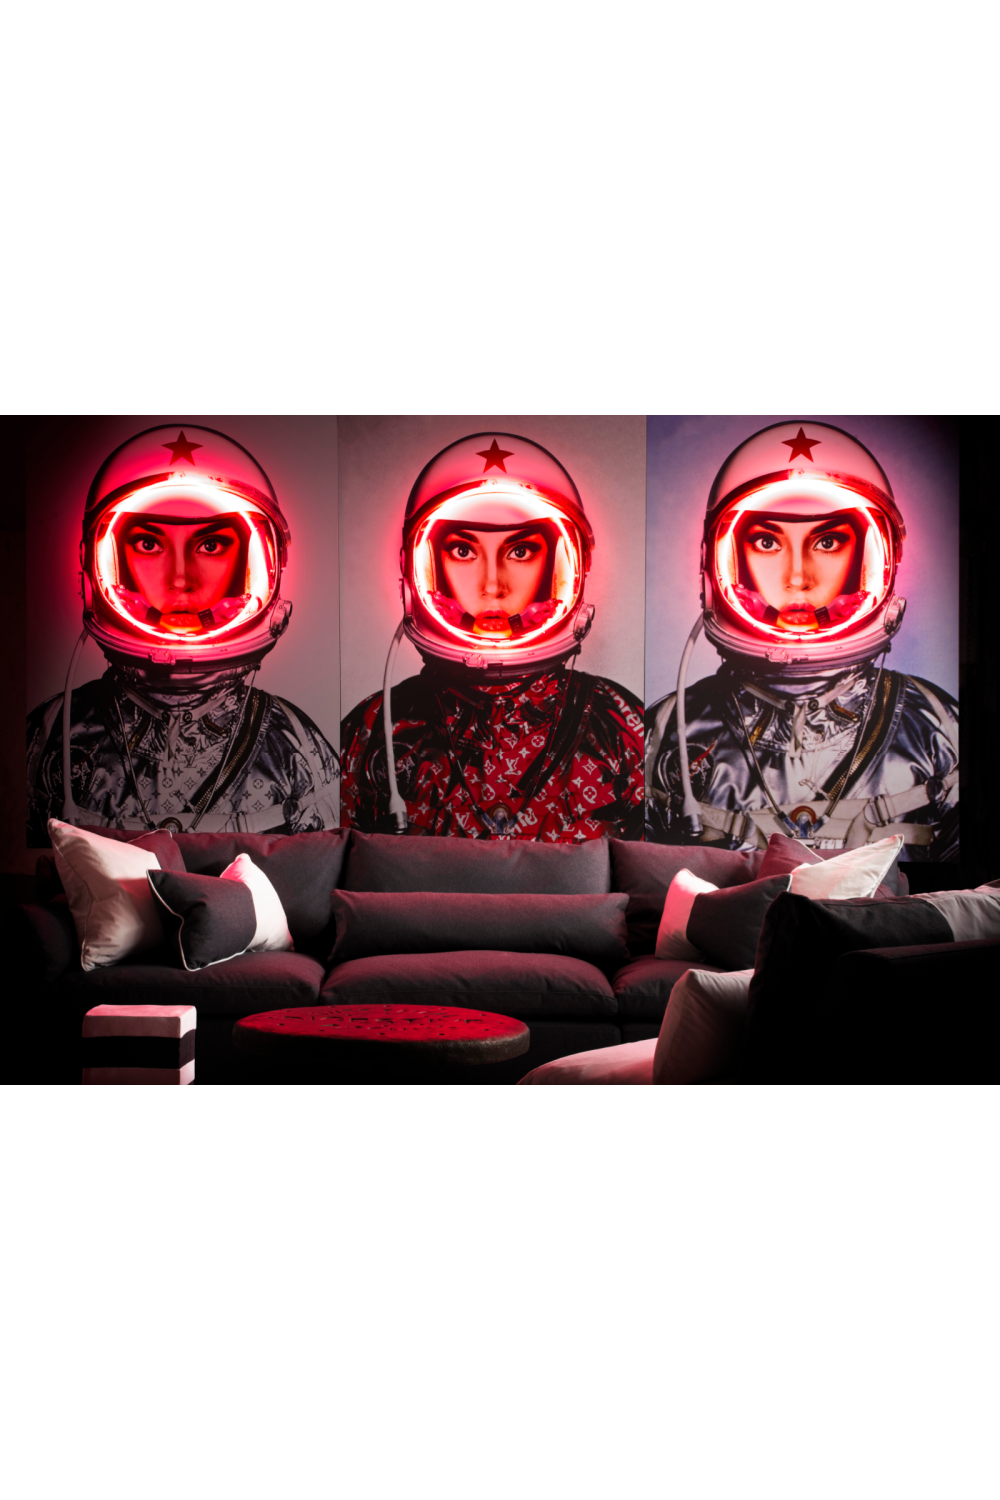 ArtStation - Astronaut x Louis Vuitton